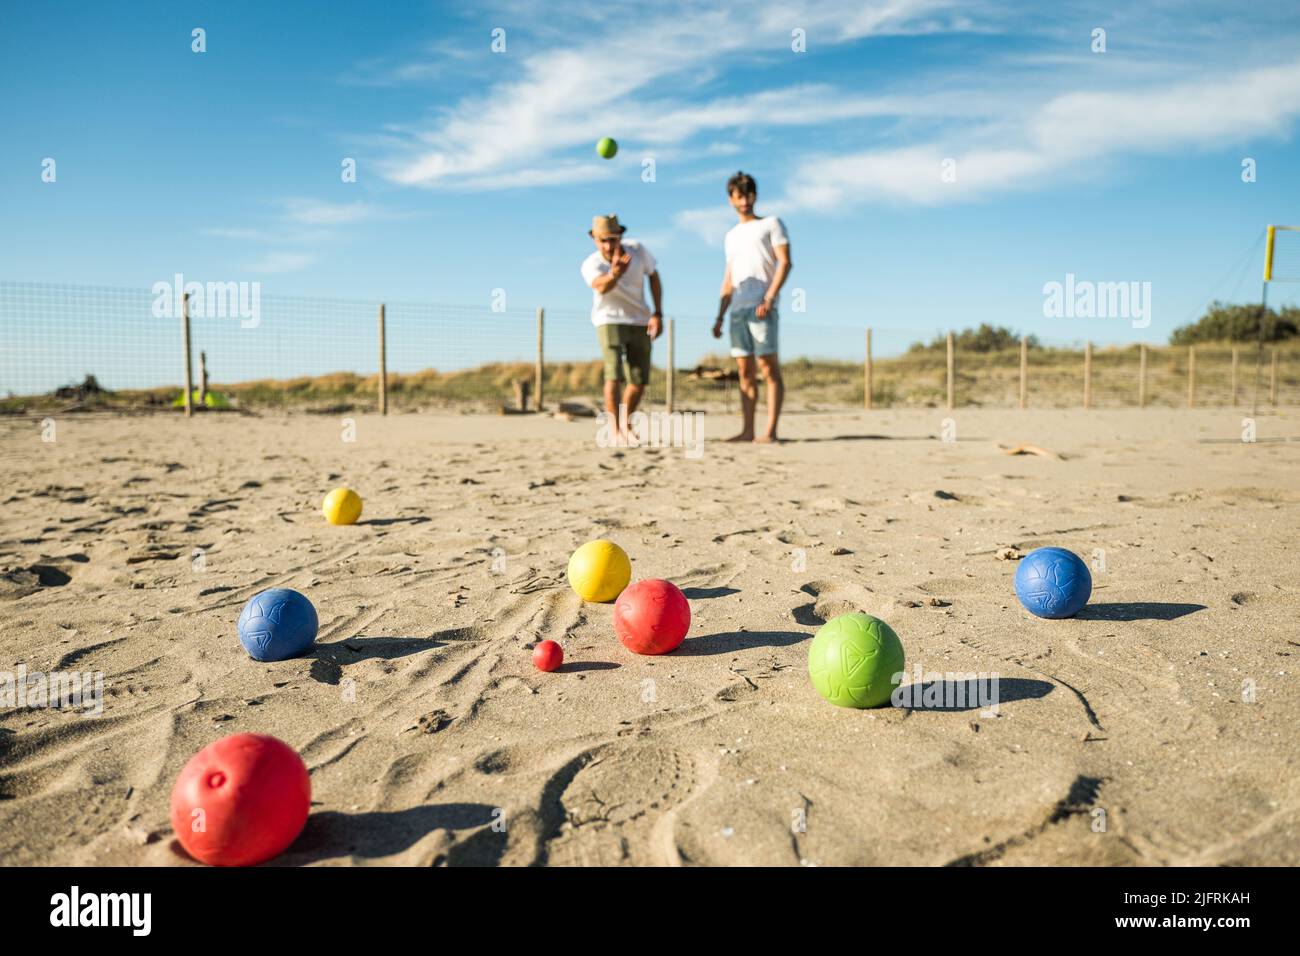 Touristen spielen ein aktives Spiel, Petanque auf einem Sandstrand am Meer - Gruppe von jungen Menschen spielen Boule im Freien in Strandurlaub Stockfoto